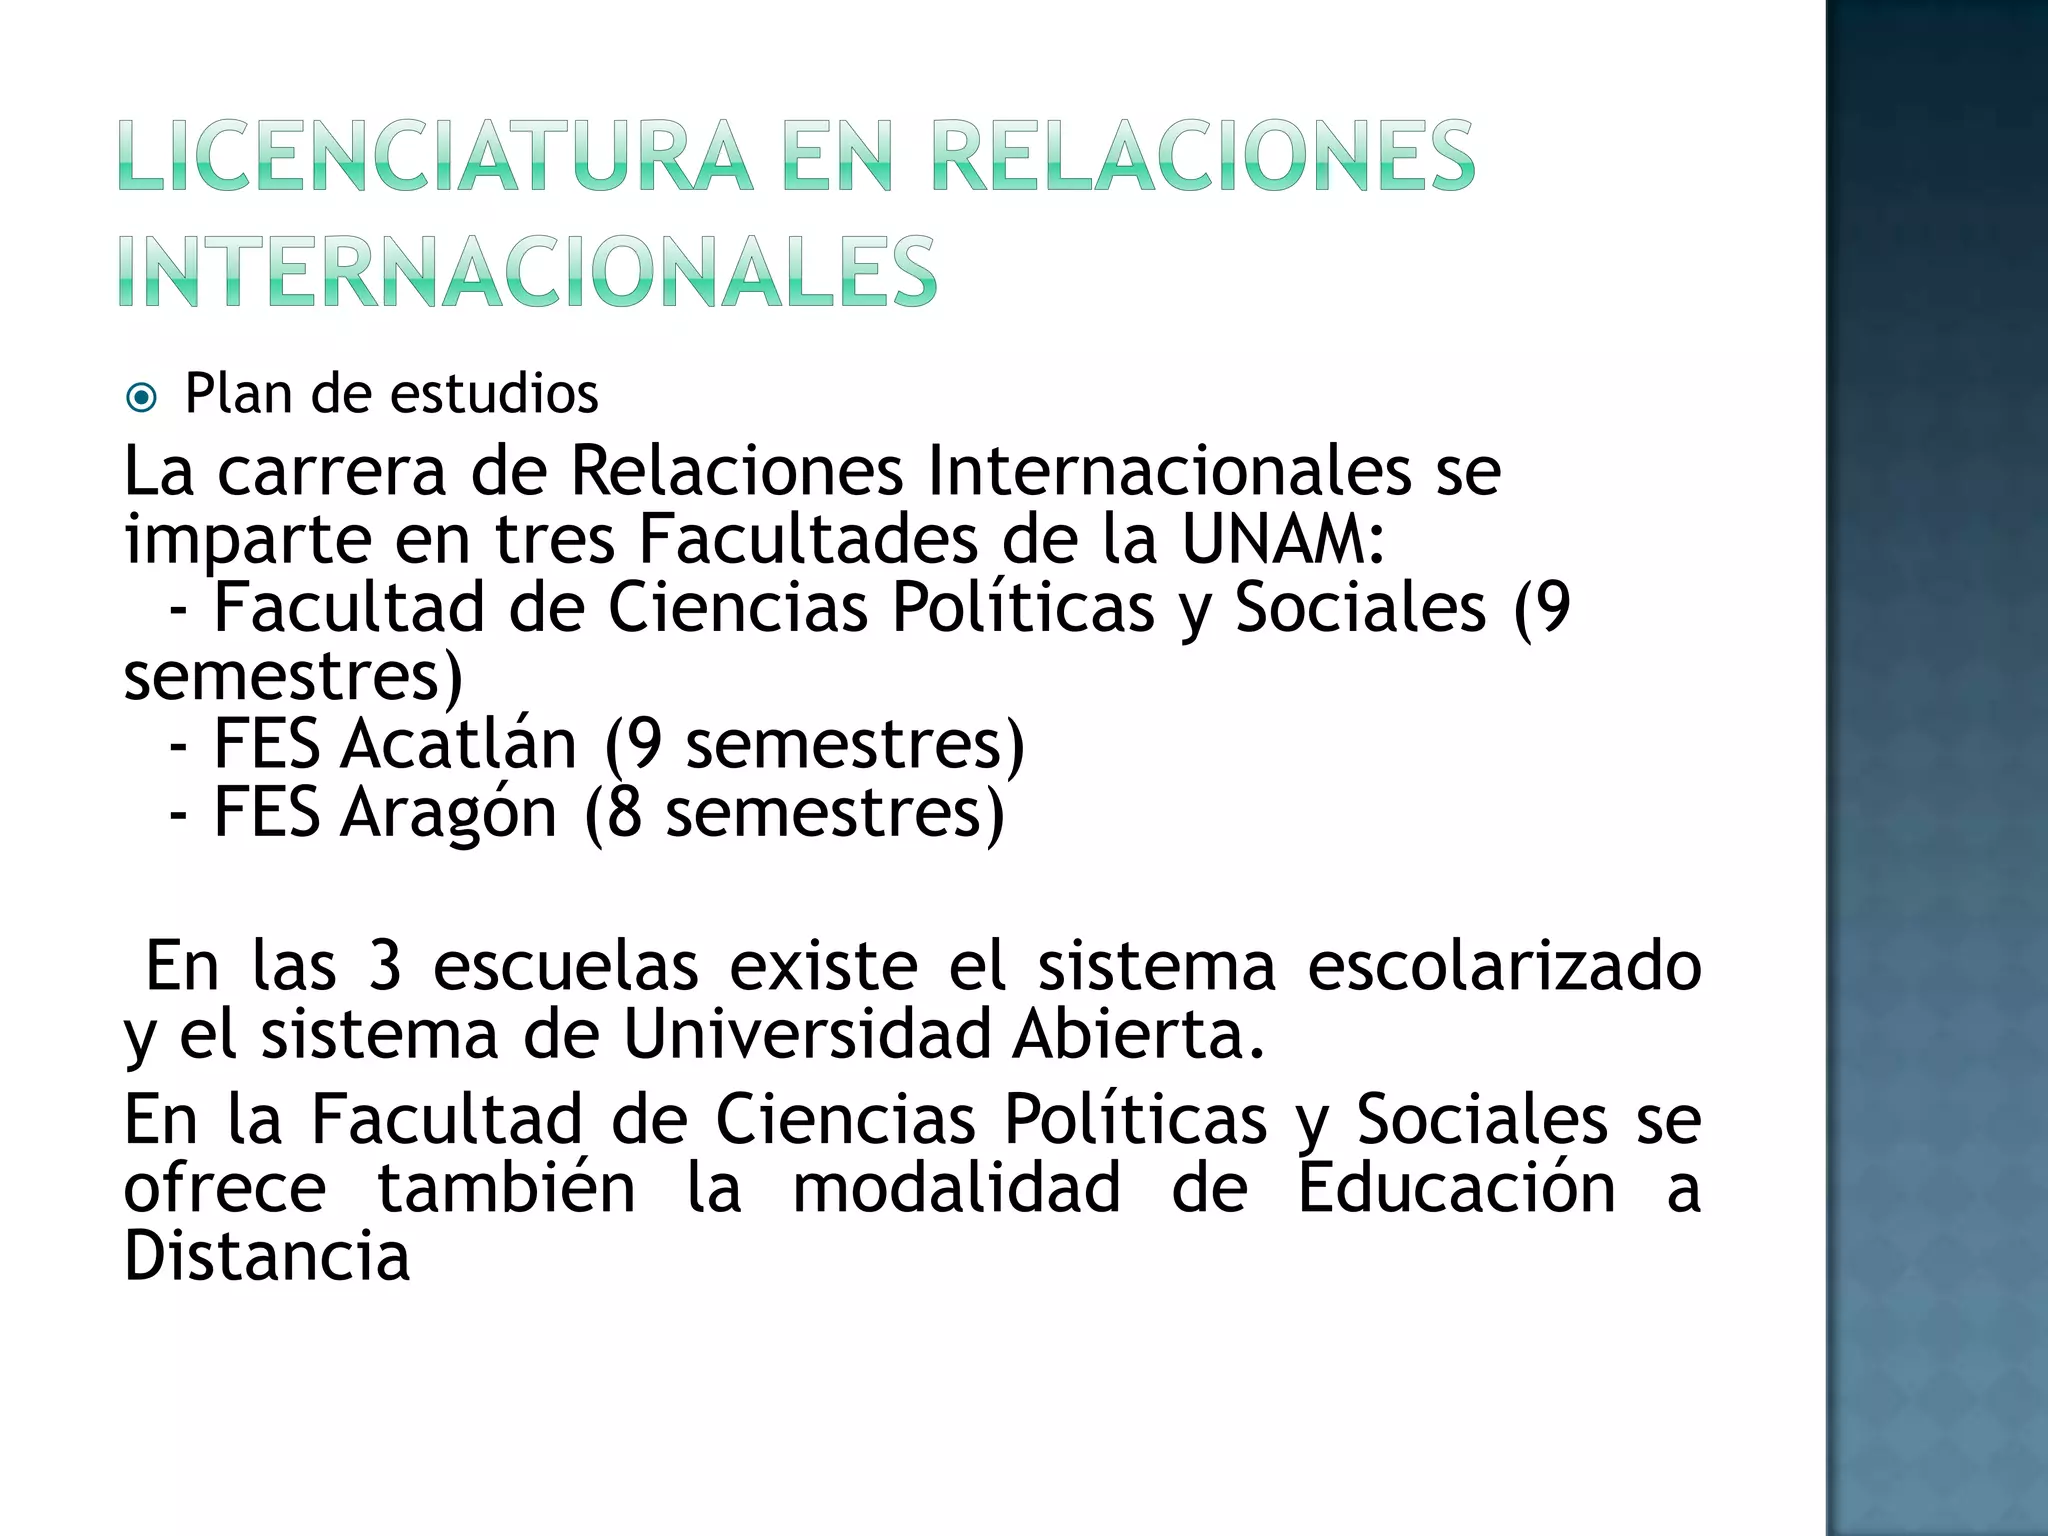 Licenciatura en relaciones internacionales (1)